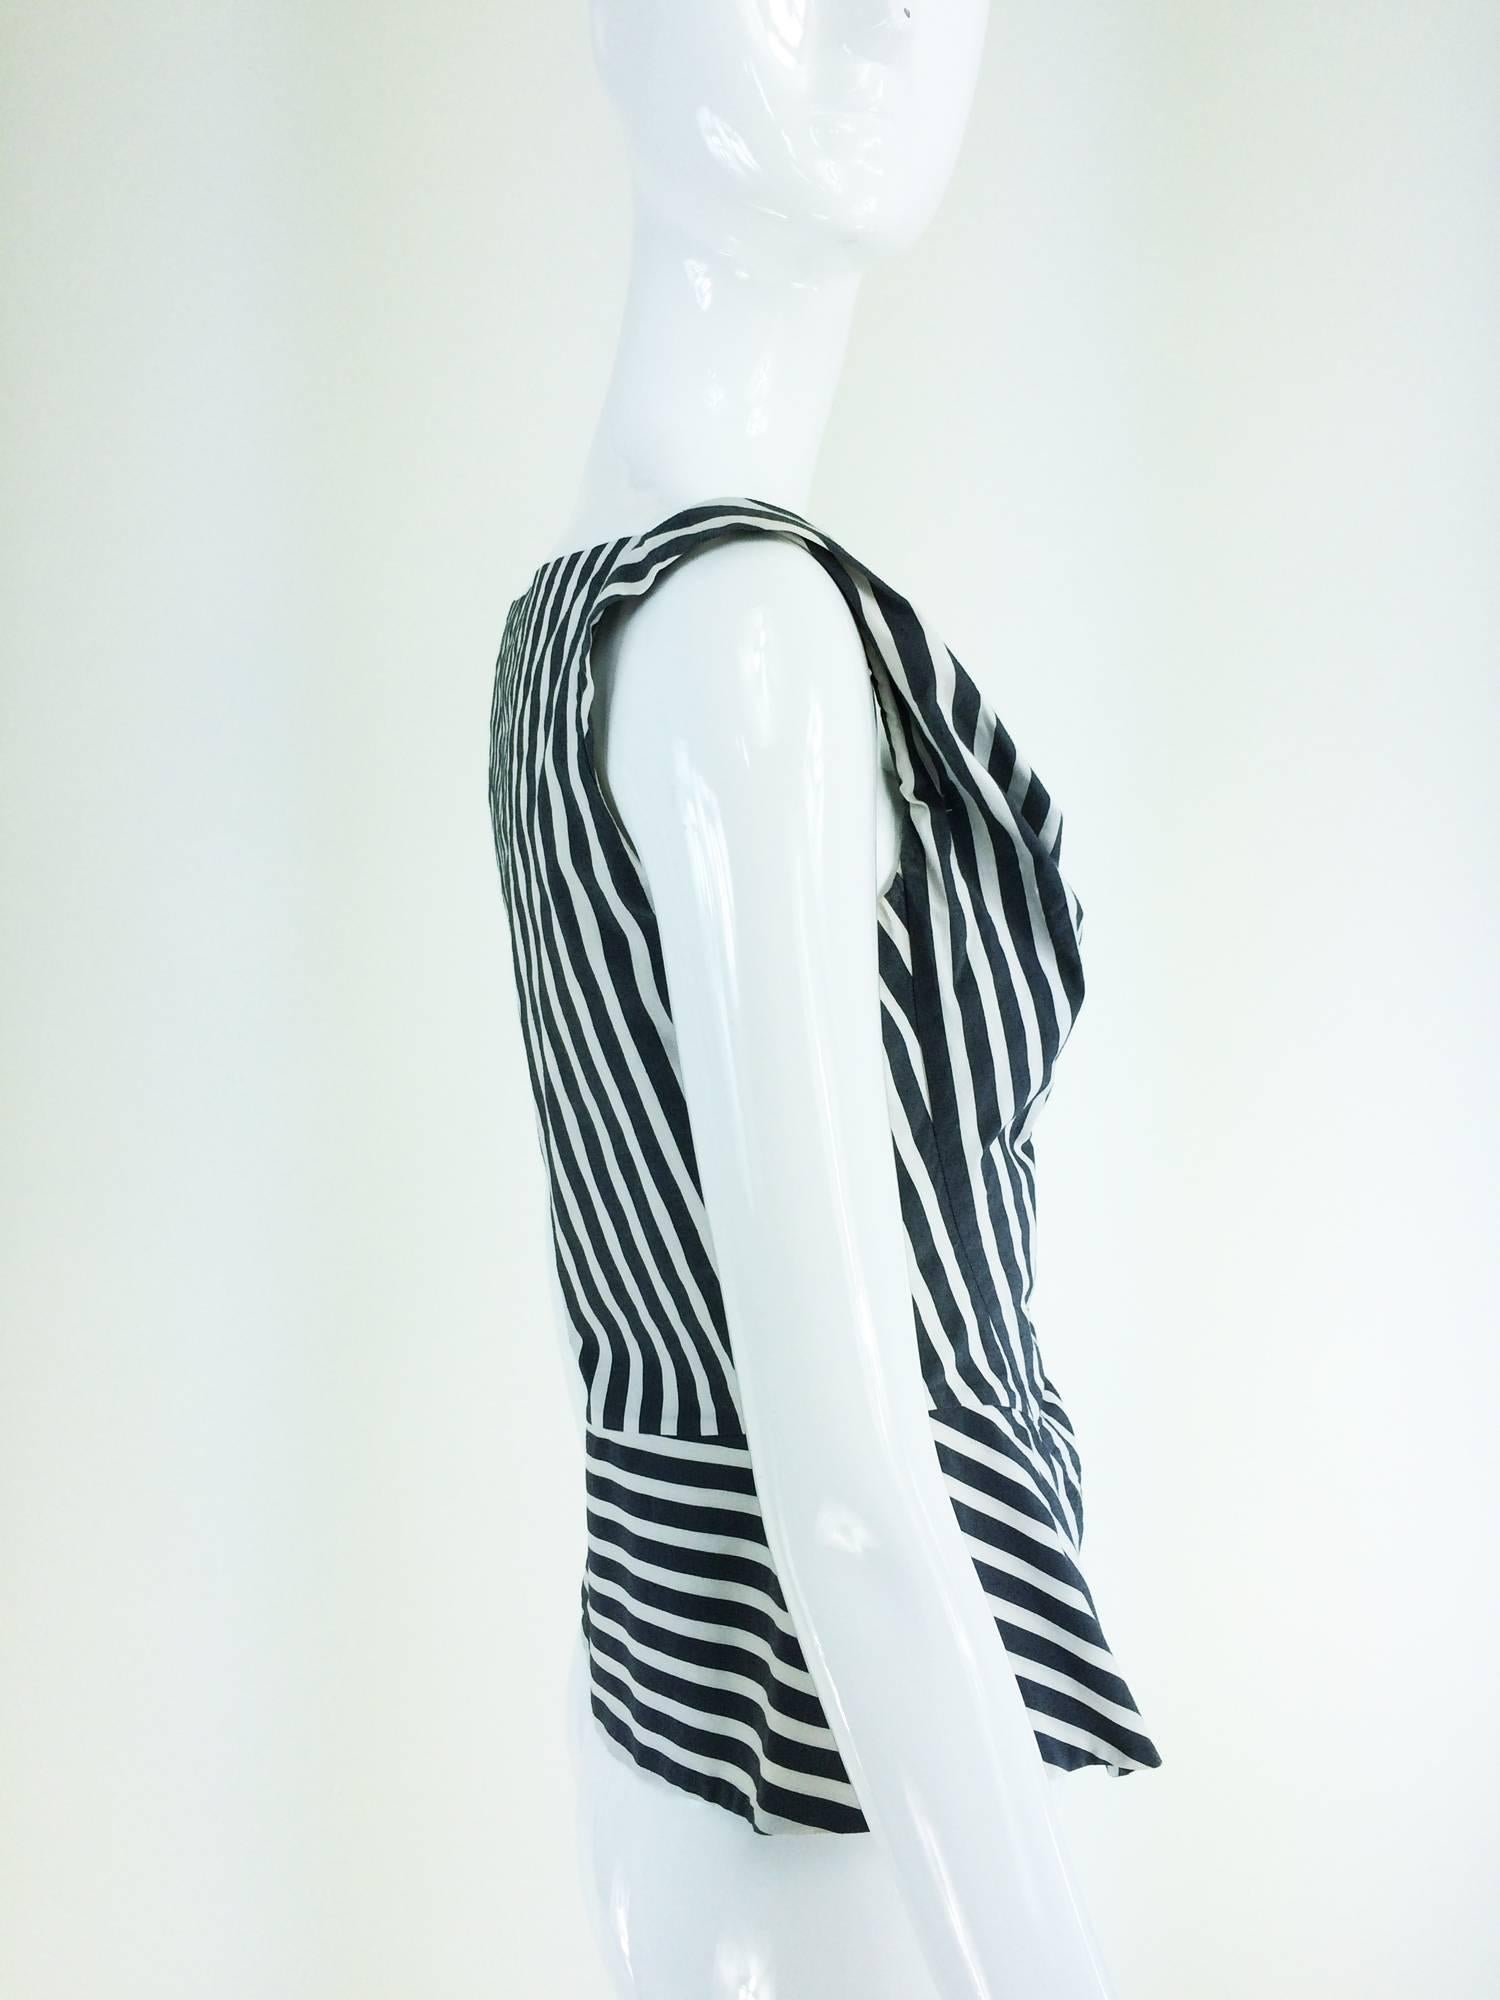 black and white stripe corset